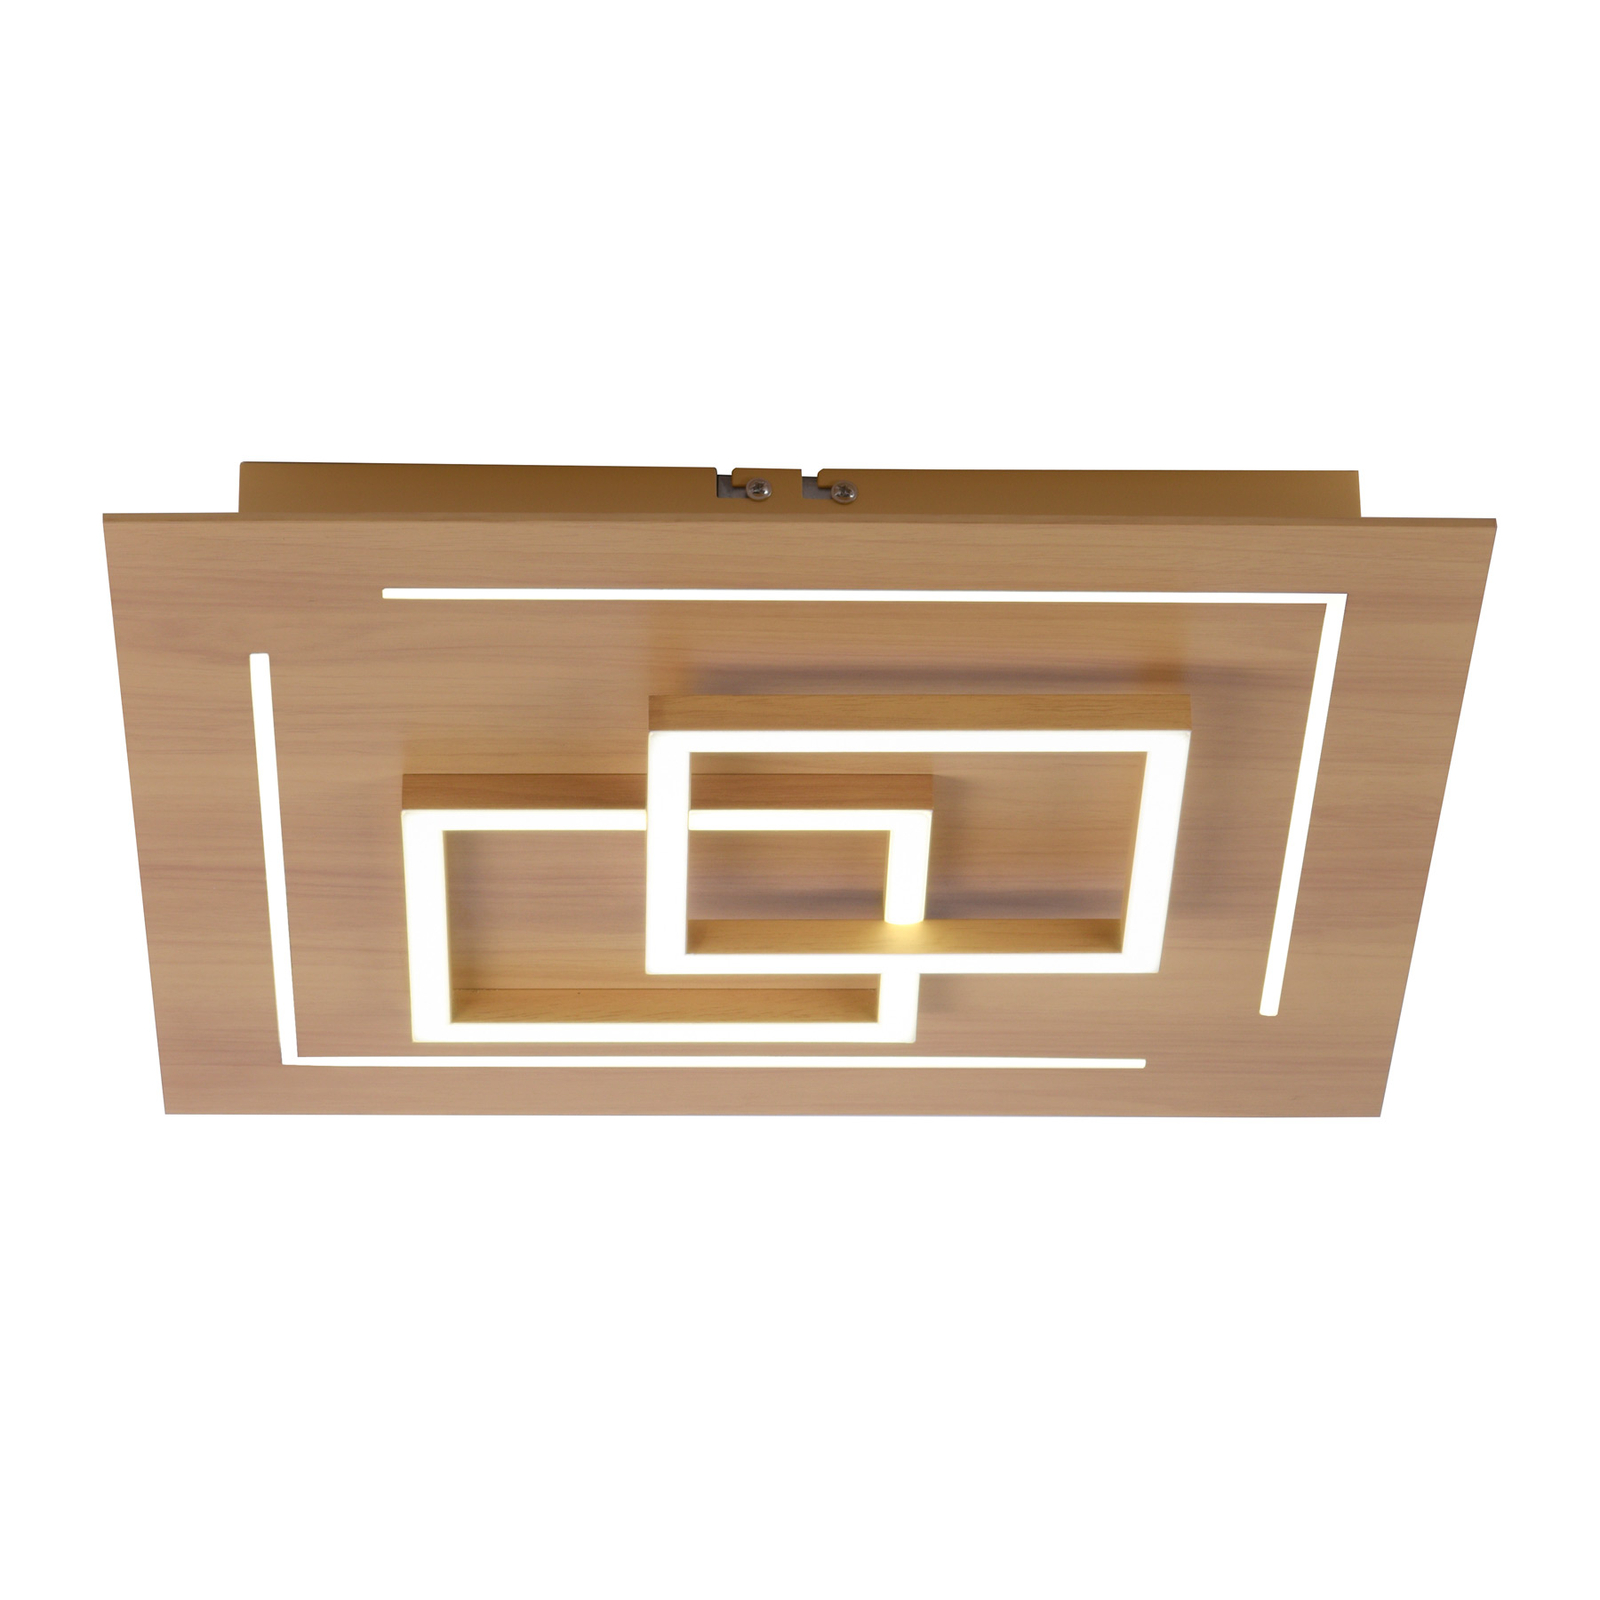 Paul Neuhaus Q-LINEA stropné LED svietidlo 40 cm